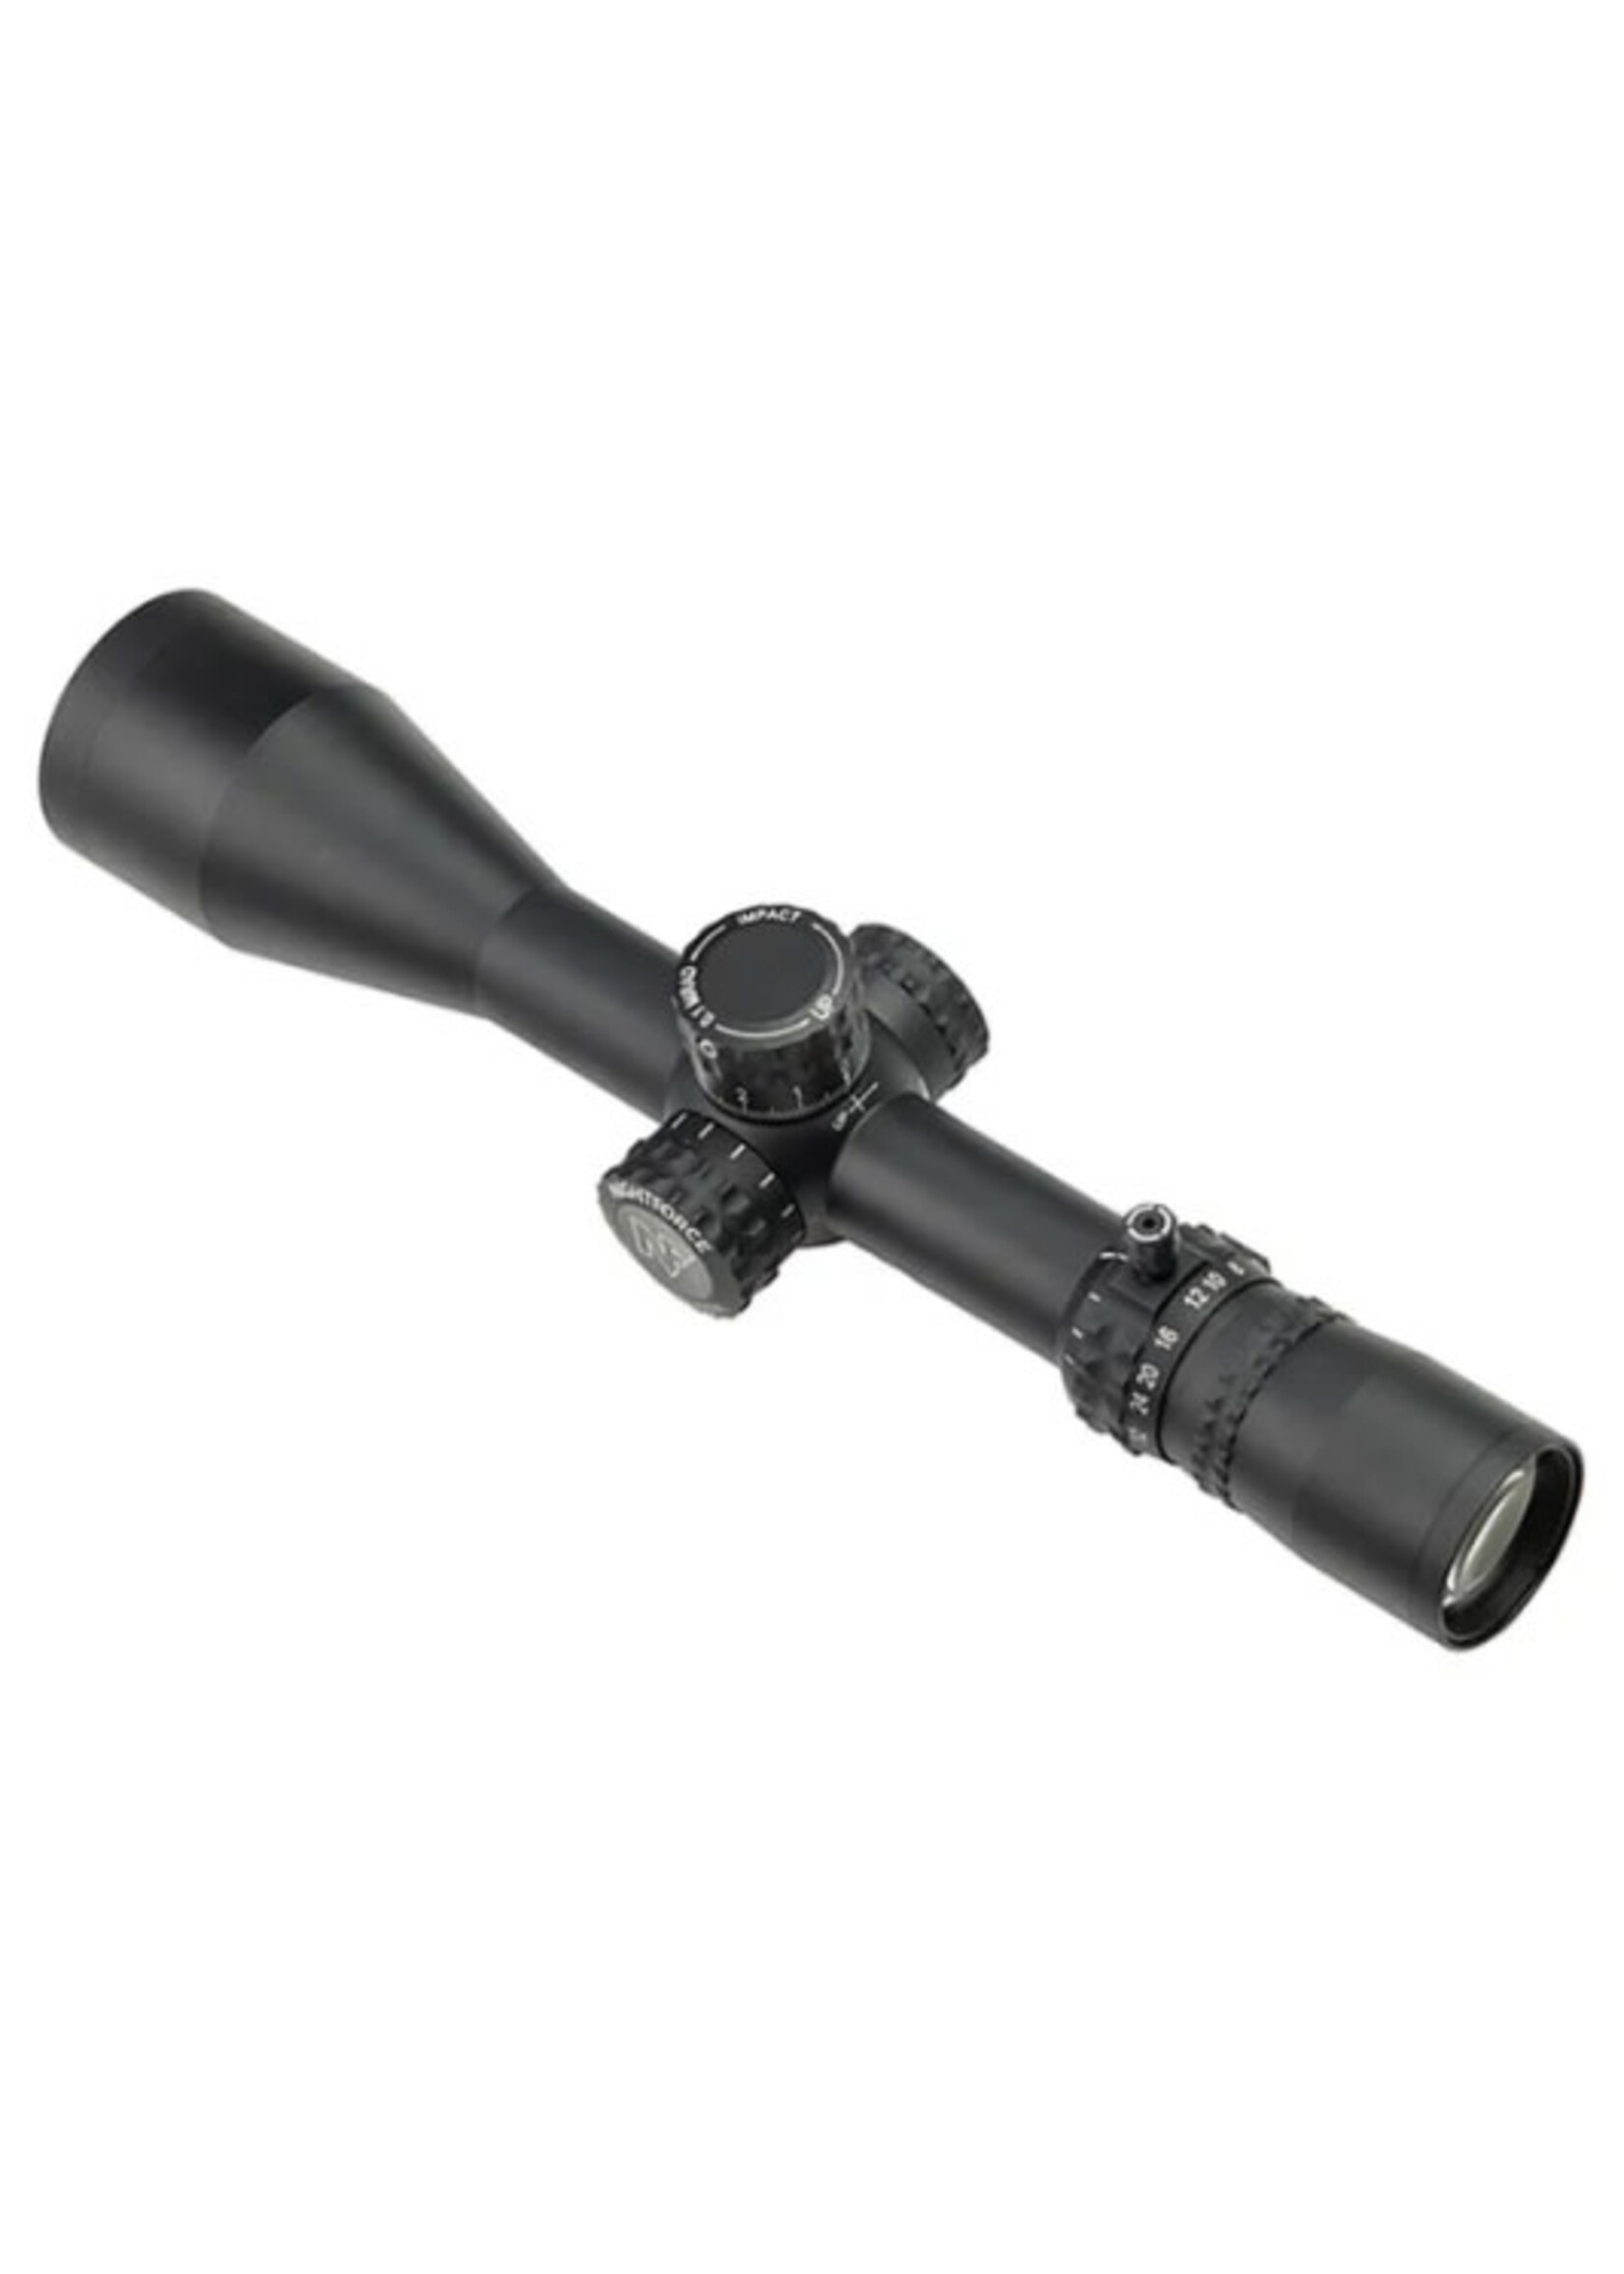 Nightforce Nightforce NX8 4-32x50 Mil-C Riflescope C625